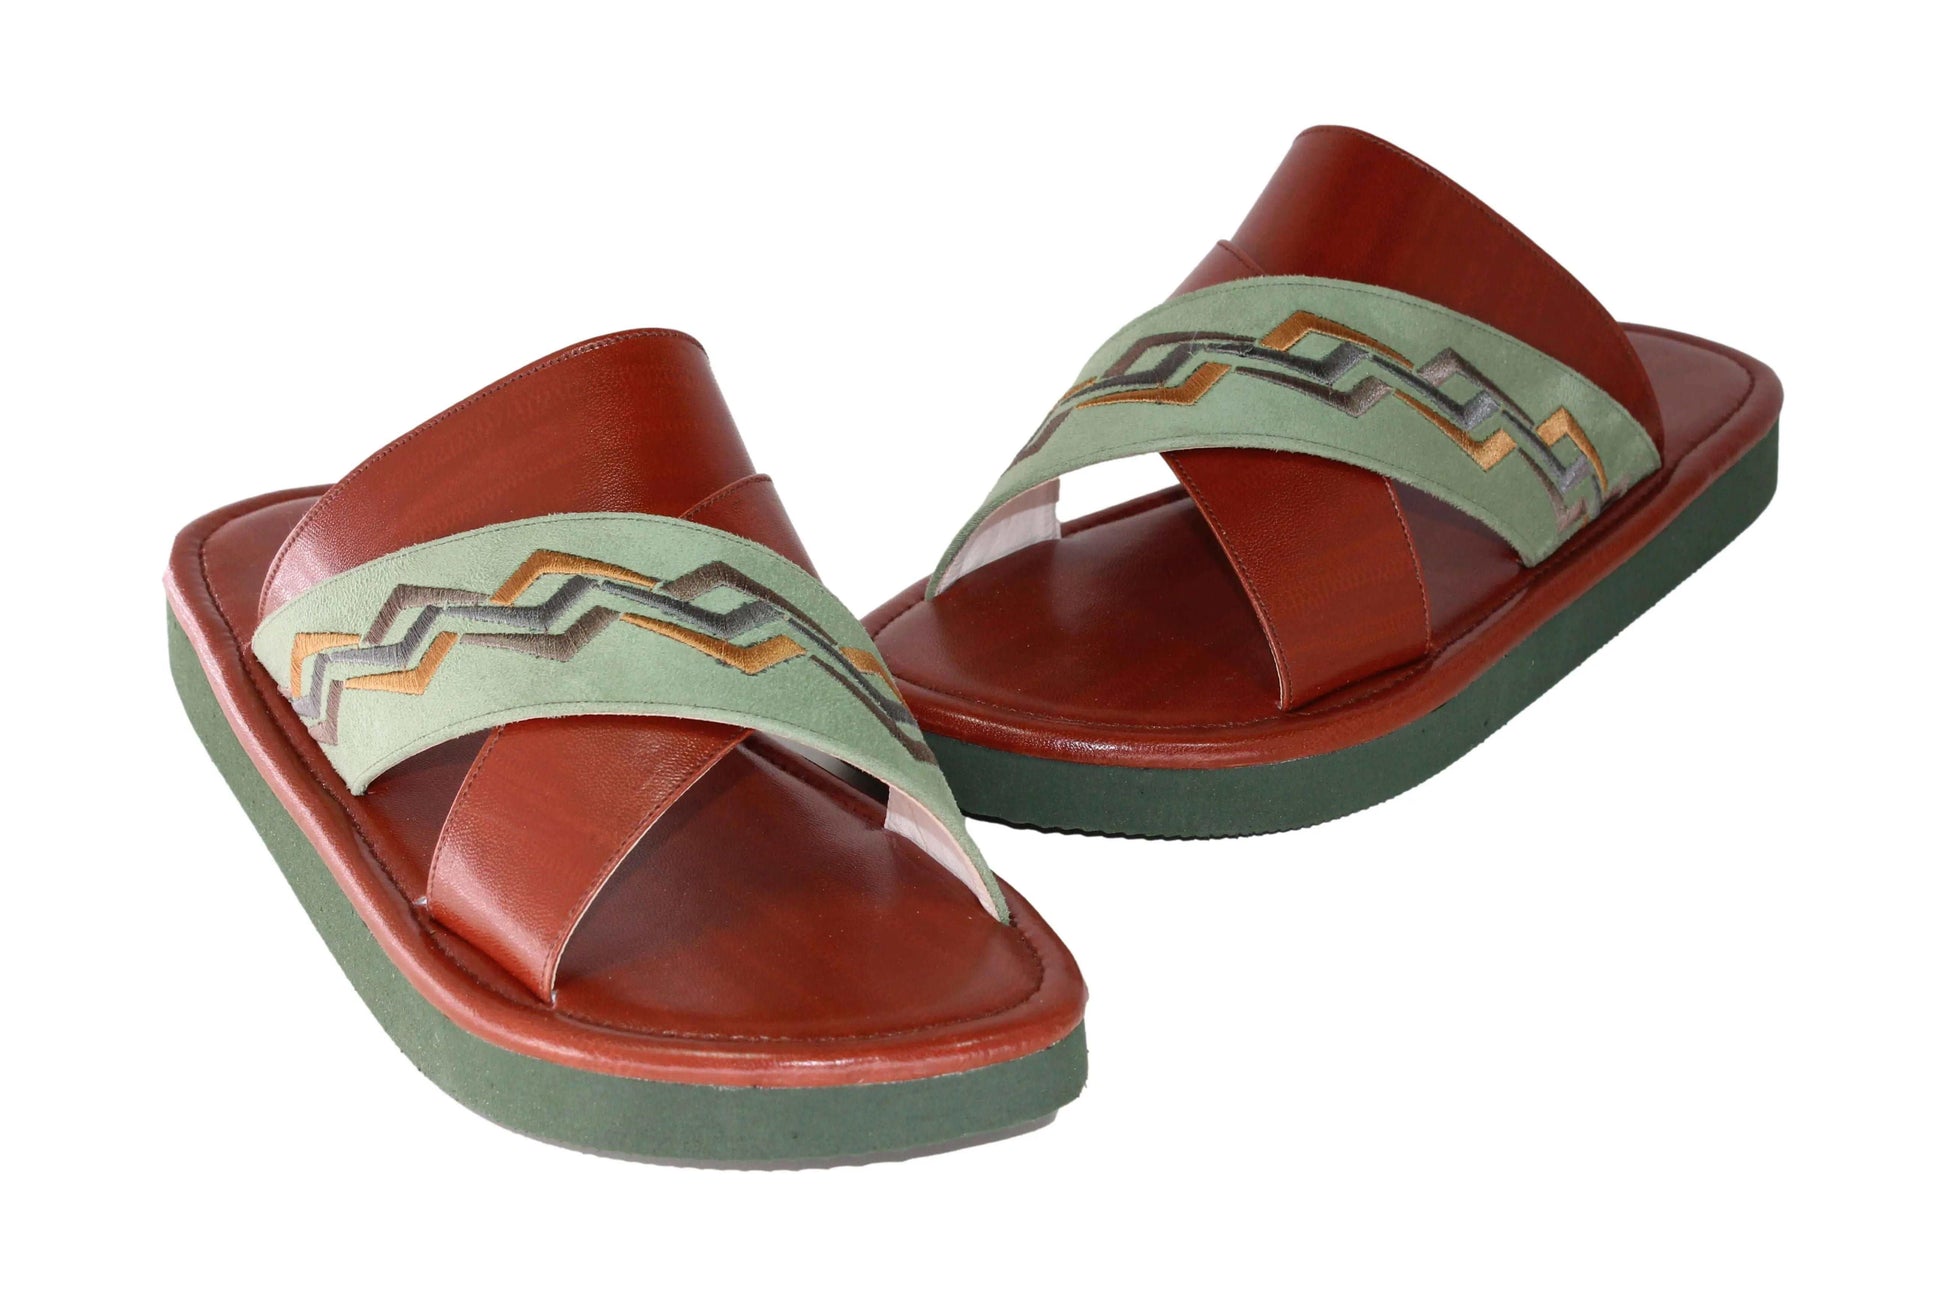 أنواع الحذاء | ShoeTypes حذاء شرقي وطني بدون اصبع أنواع الحذاء - شرقي - بدون اصبع